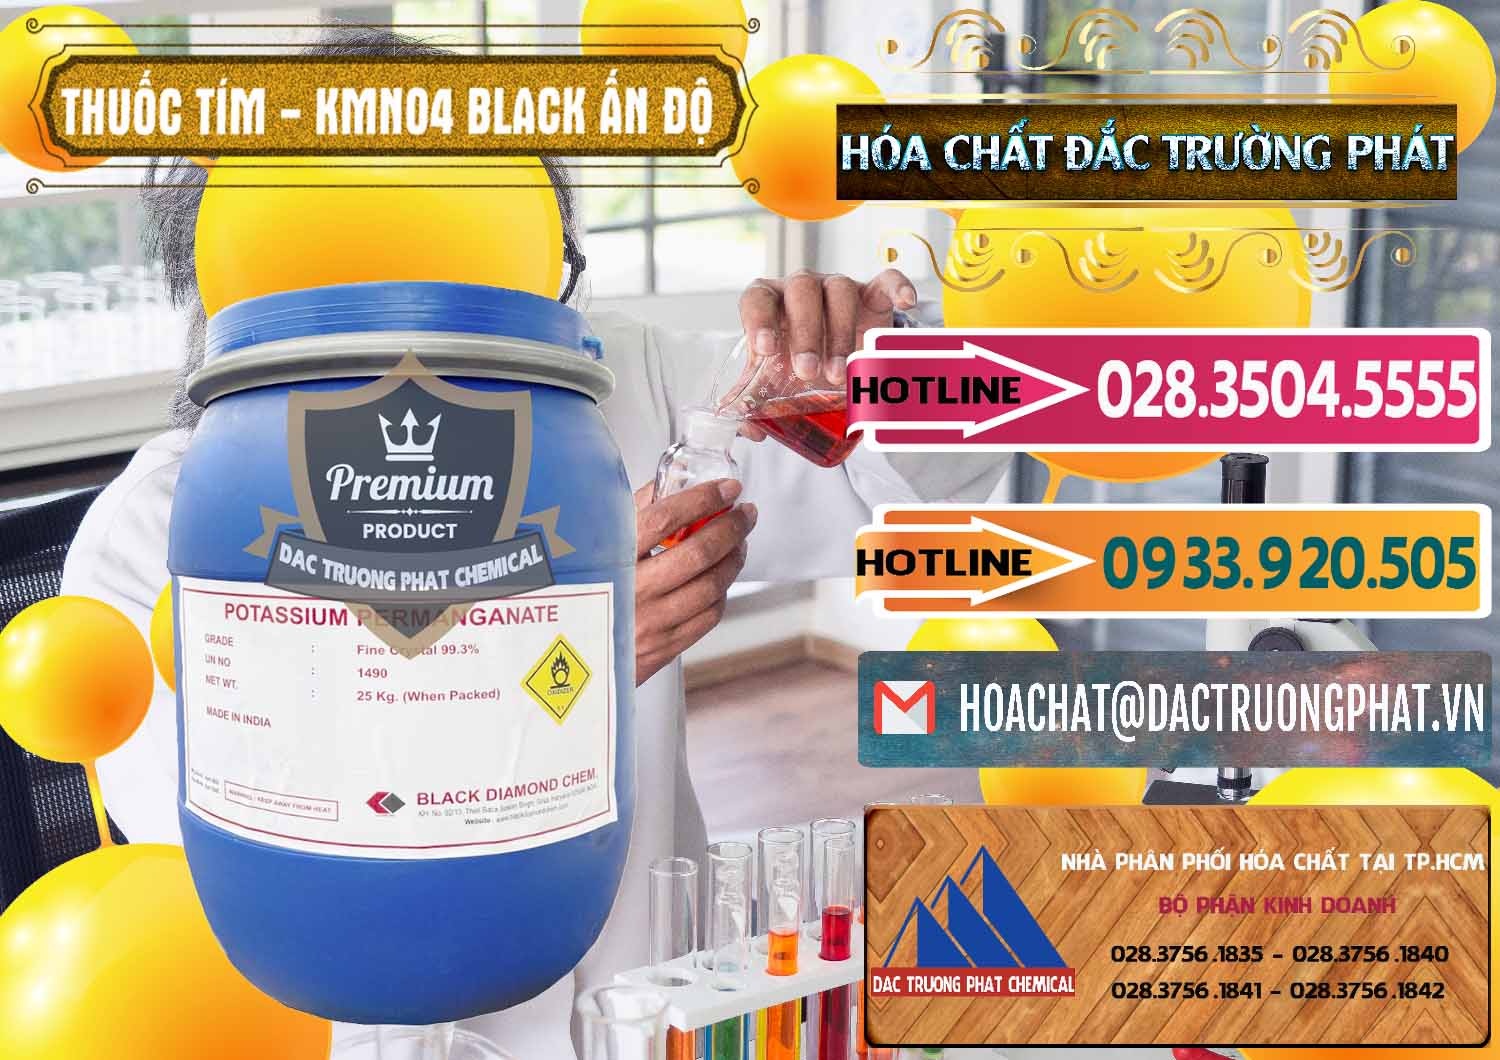 Cty chuyên bán ( phân phối ) Thuốc Tím - KMNO4 Black Diamond Ấn Độ India - 0414 - Công ty cung ứng - phân phối hóa chất tại TP.HCM - dactruongphat.vn